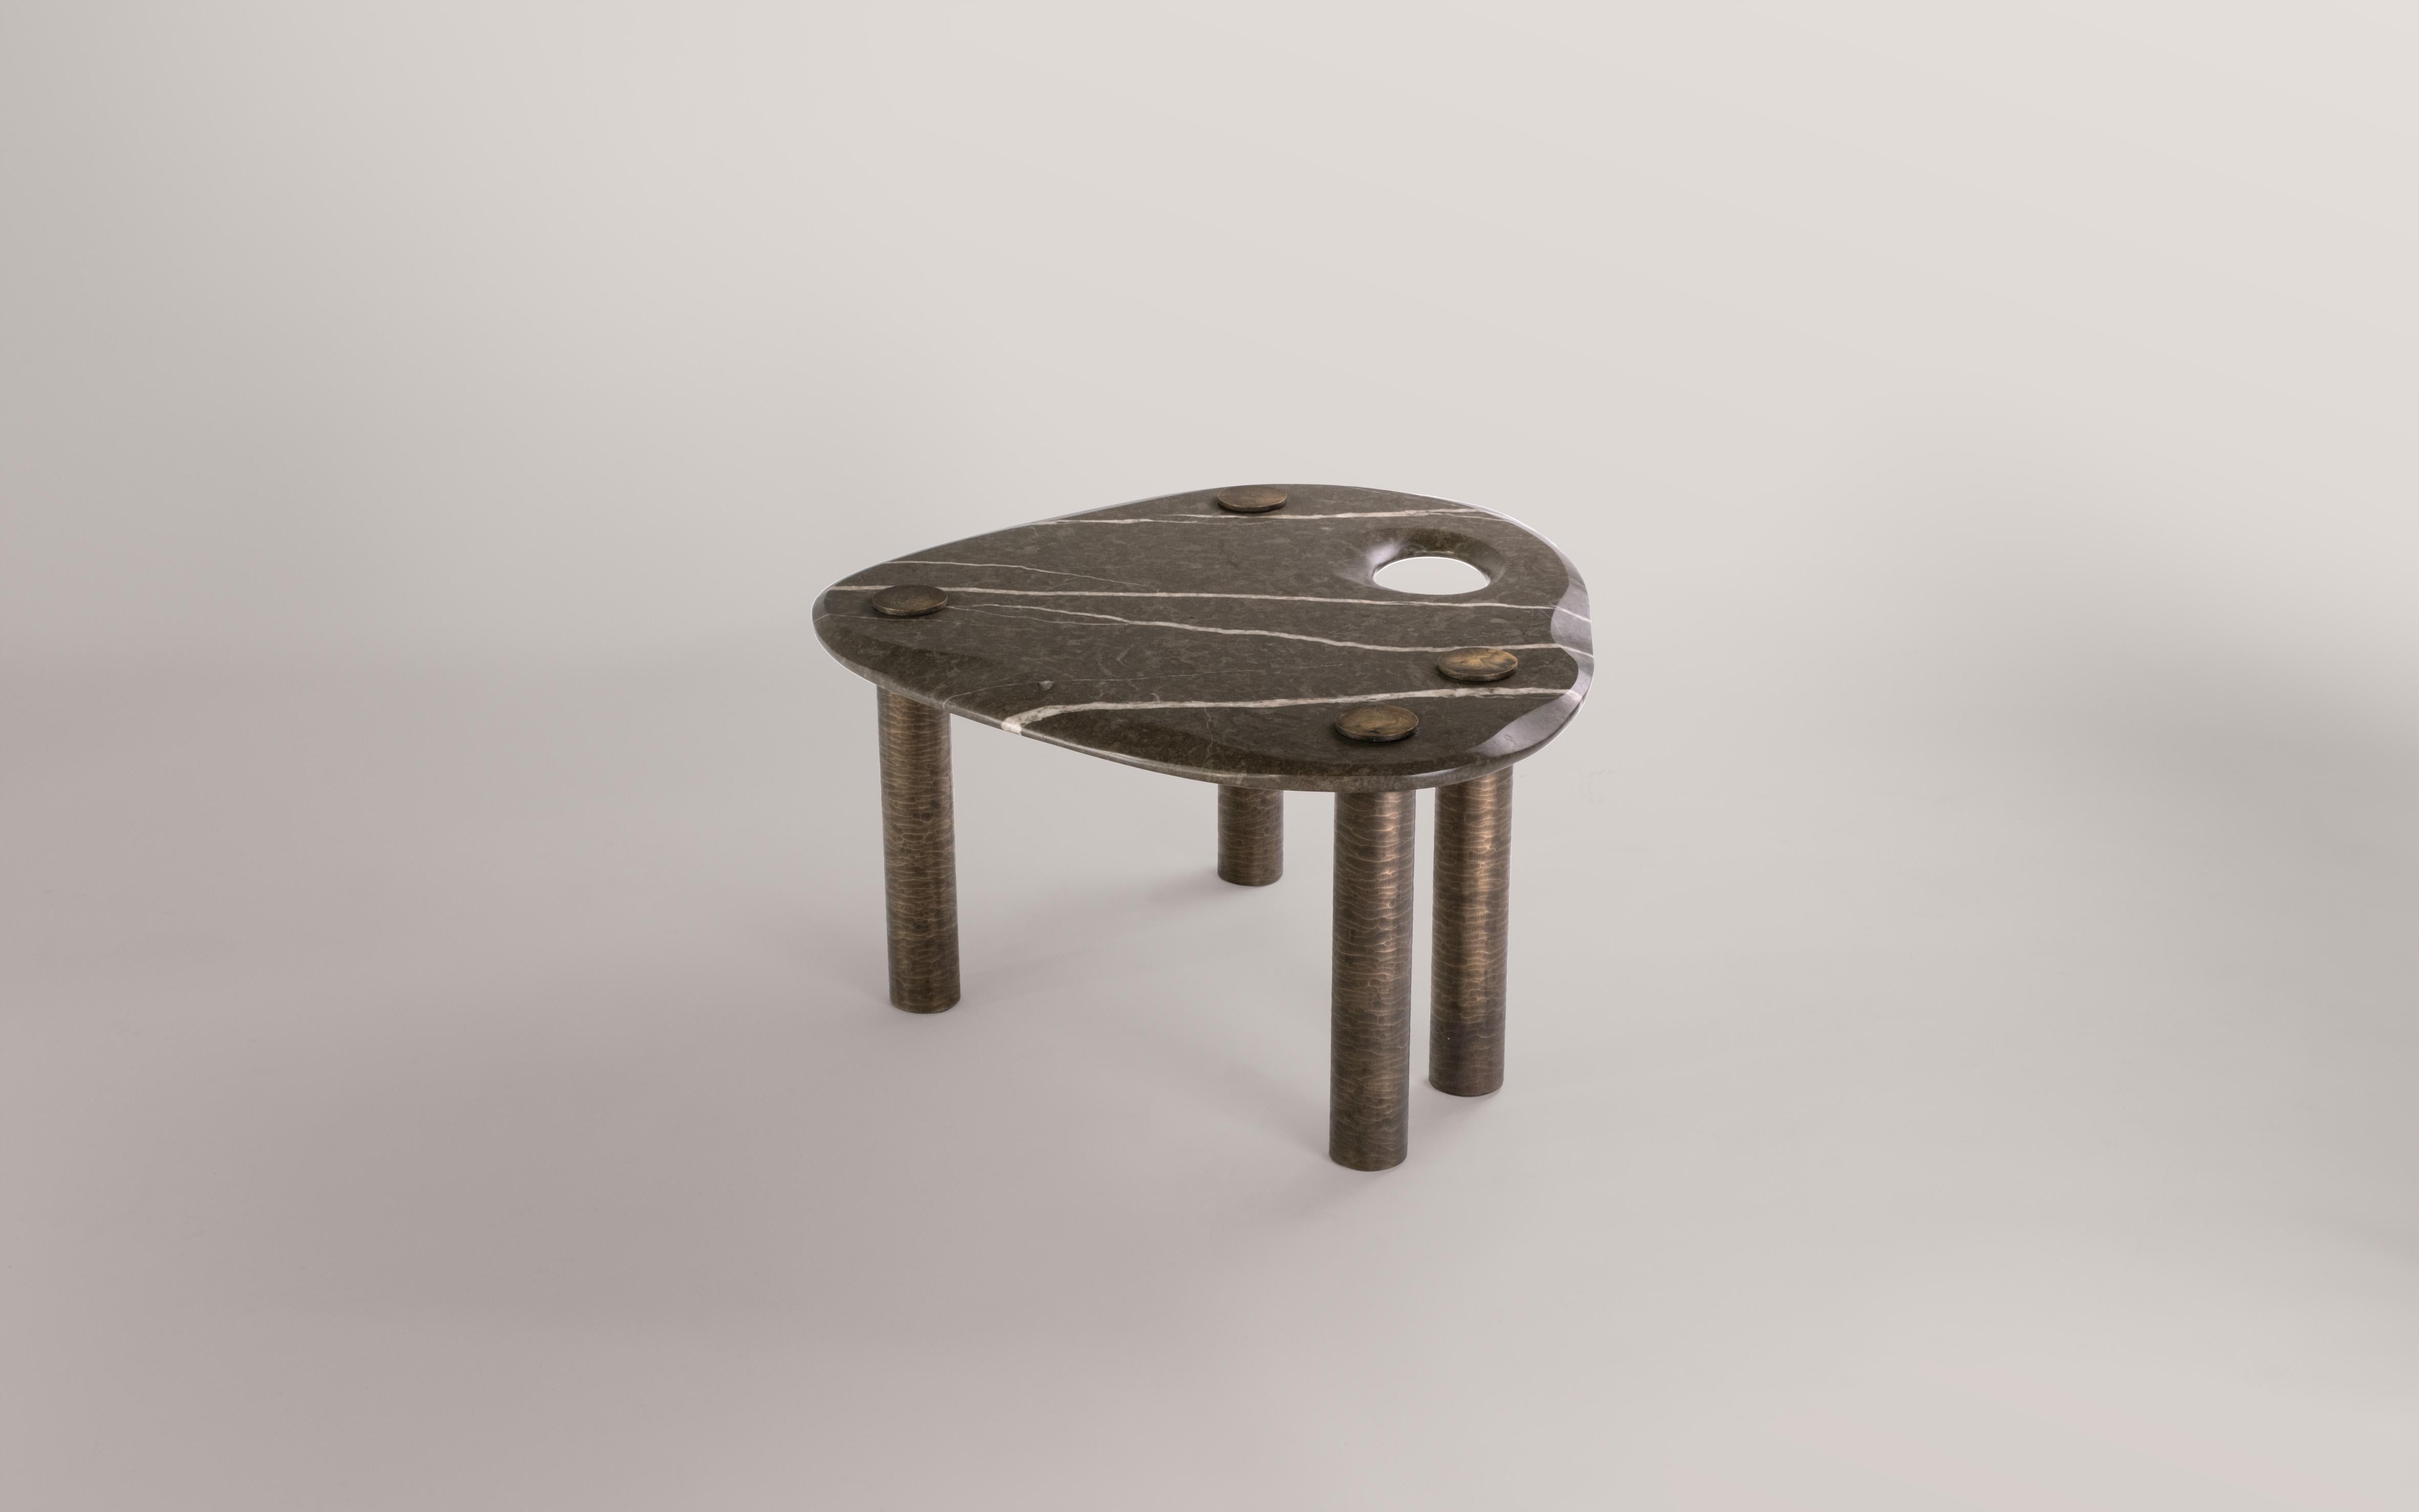 Une collection de tables de NOVOCASTRIAN en Collaboration avec Britannicus Stone, inspirée par les simples galets perforés qui enchantent les gens depuis des siècles. 

Pour ceux qui ont la chance d'en découvrir une sur nos côtes, ces pierres